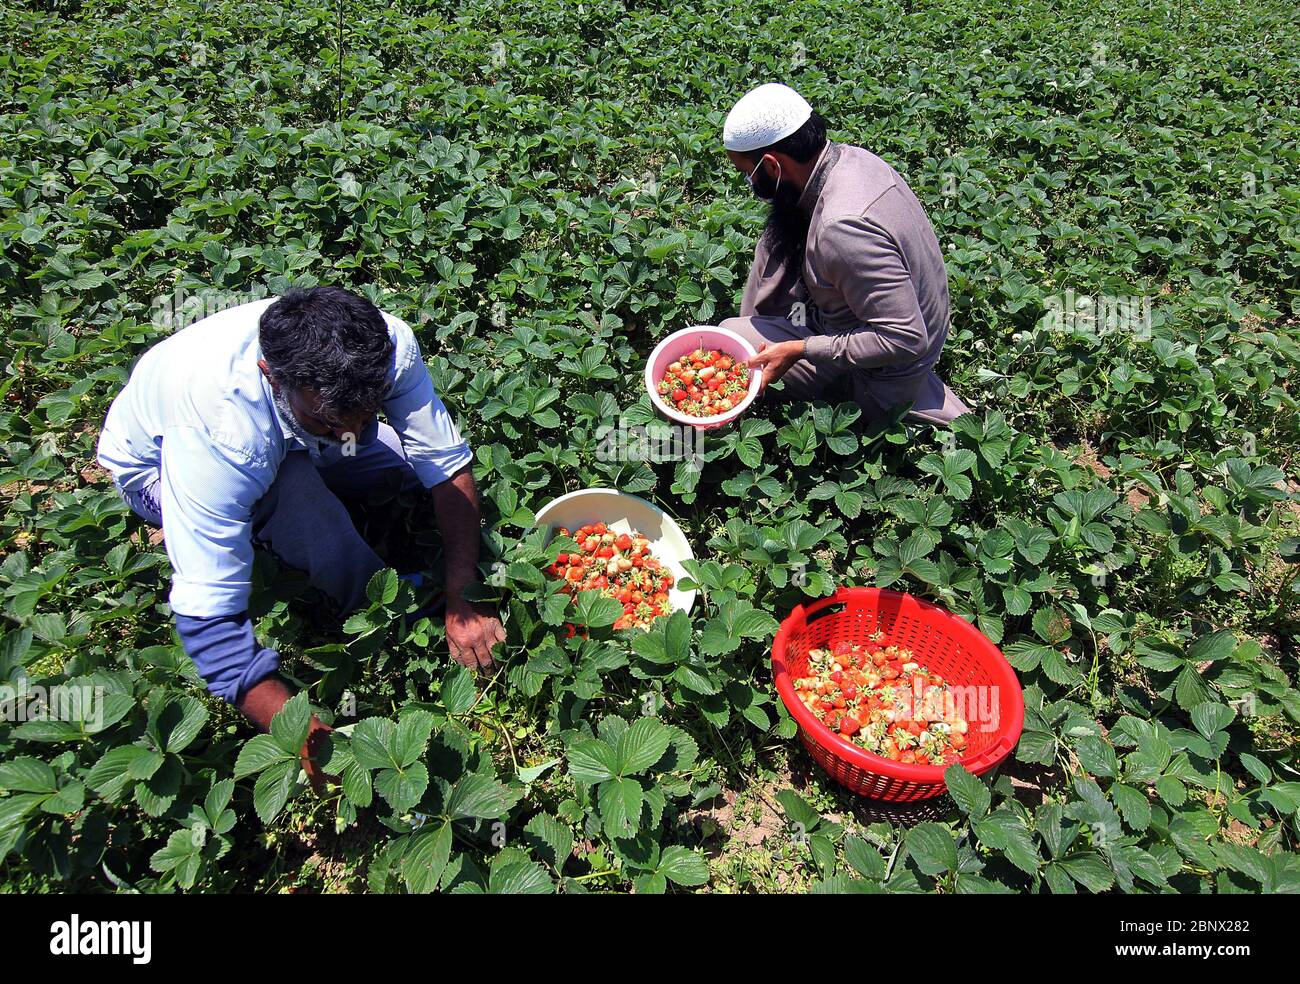 Srinagar, Jammu-et-Cachemire, Inde. 16 mai 2020. Les agriculteurs de Kashmiri collectent des fraises fraîches dans une ferme située à la périphérie de Srinagar.les agriculteurs disent qu'ils ont du mal à vendre leur récolte, car le confinement a fait un lourd tribut aux affaires de cette année. Crédit : Faisal Khan/ZUMA Wire/Alay Live News Banque D'Images